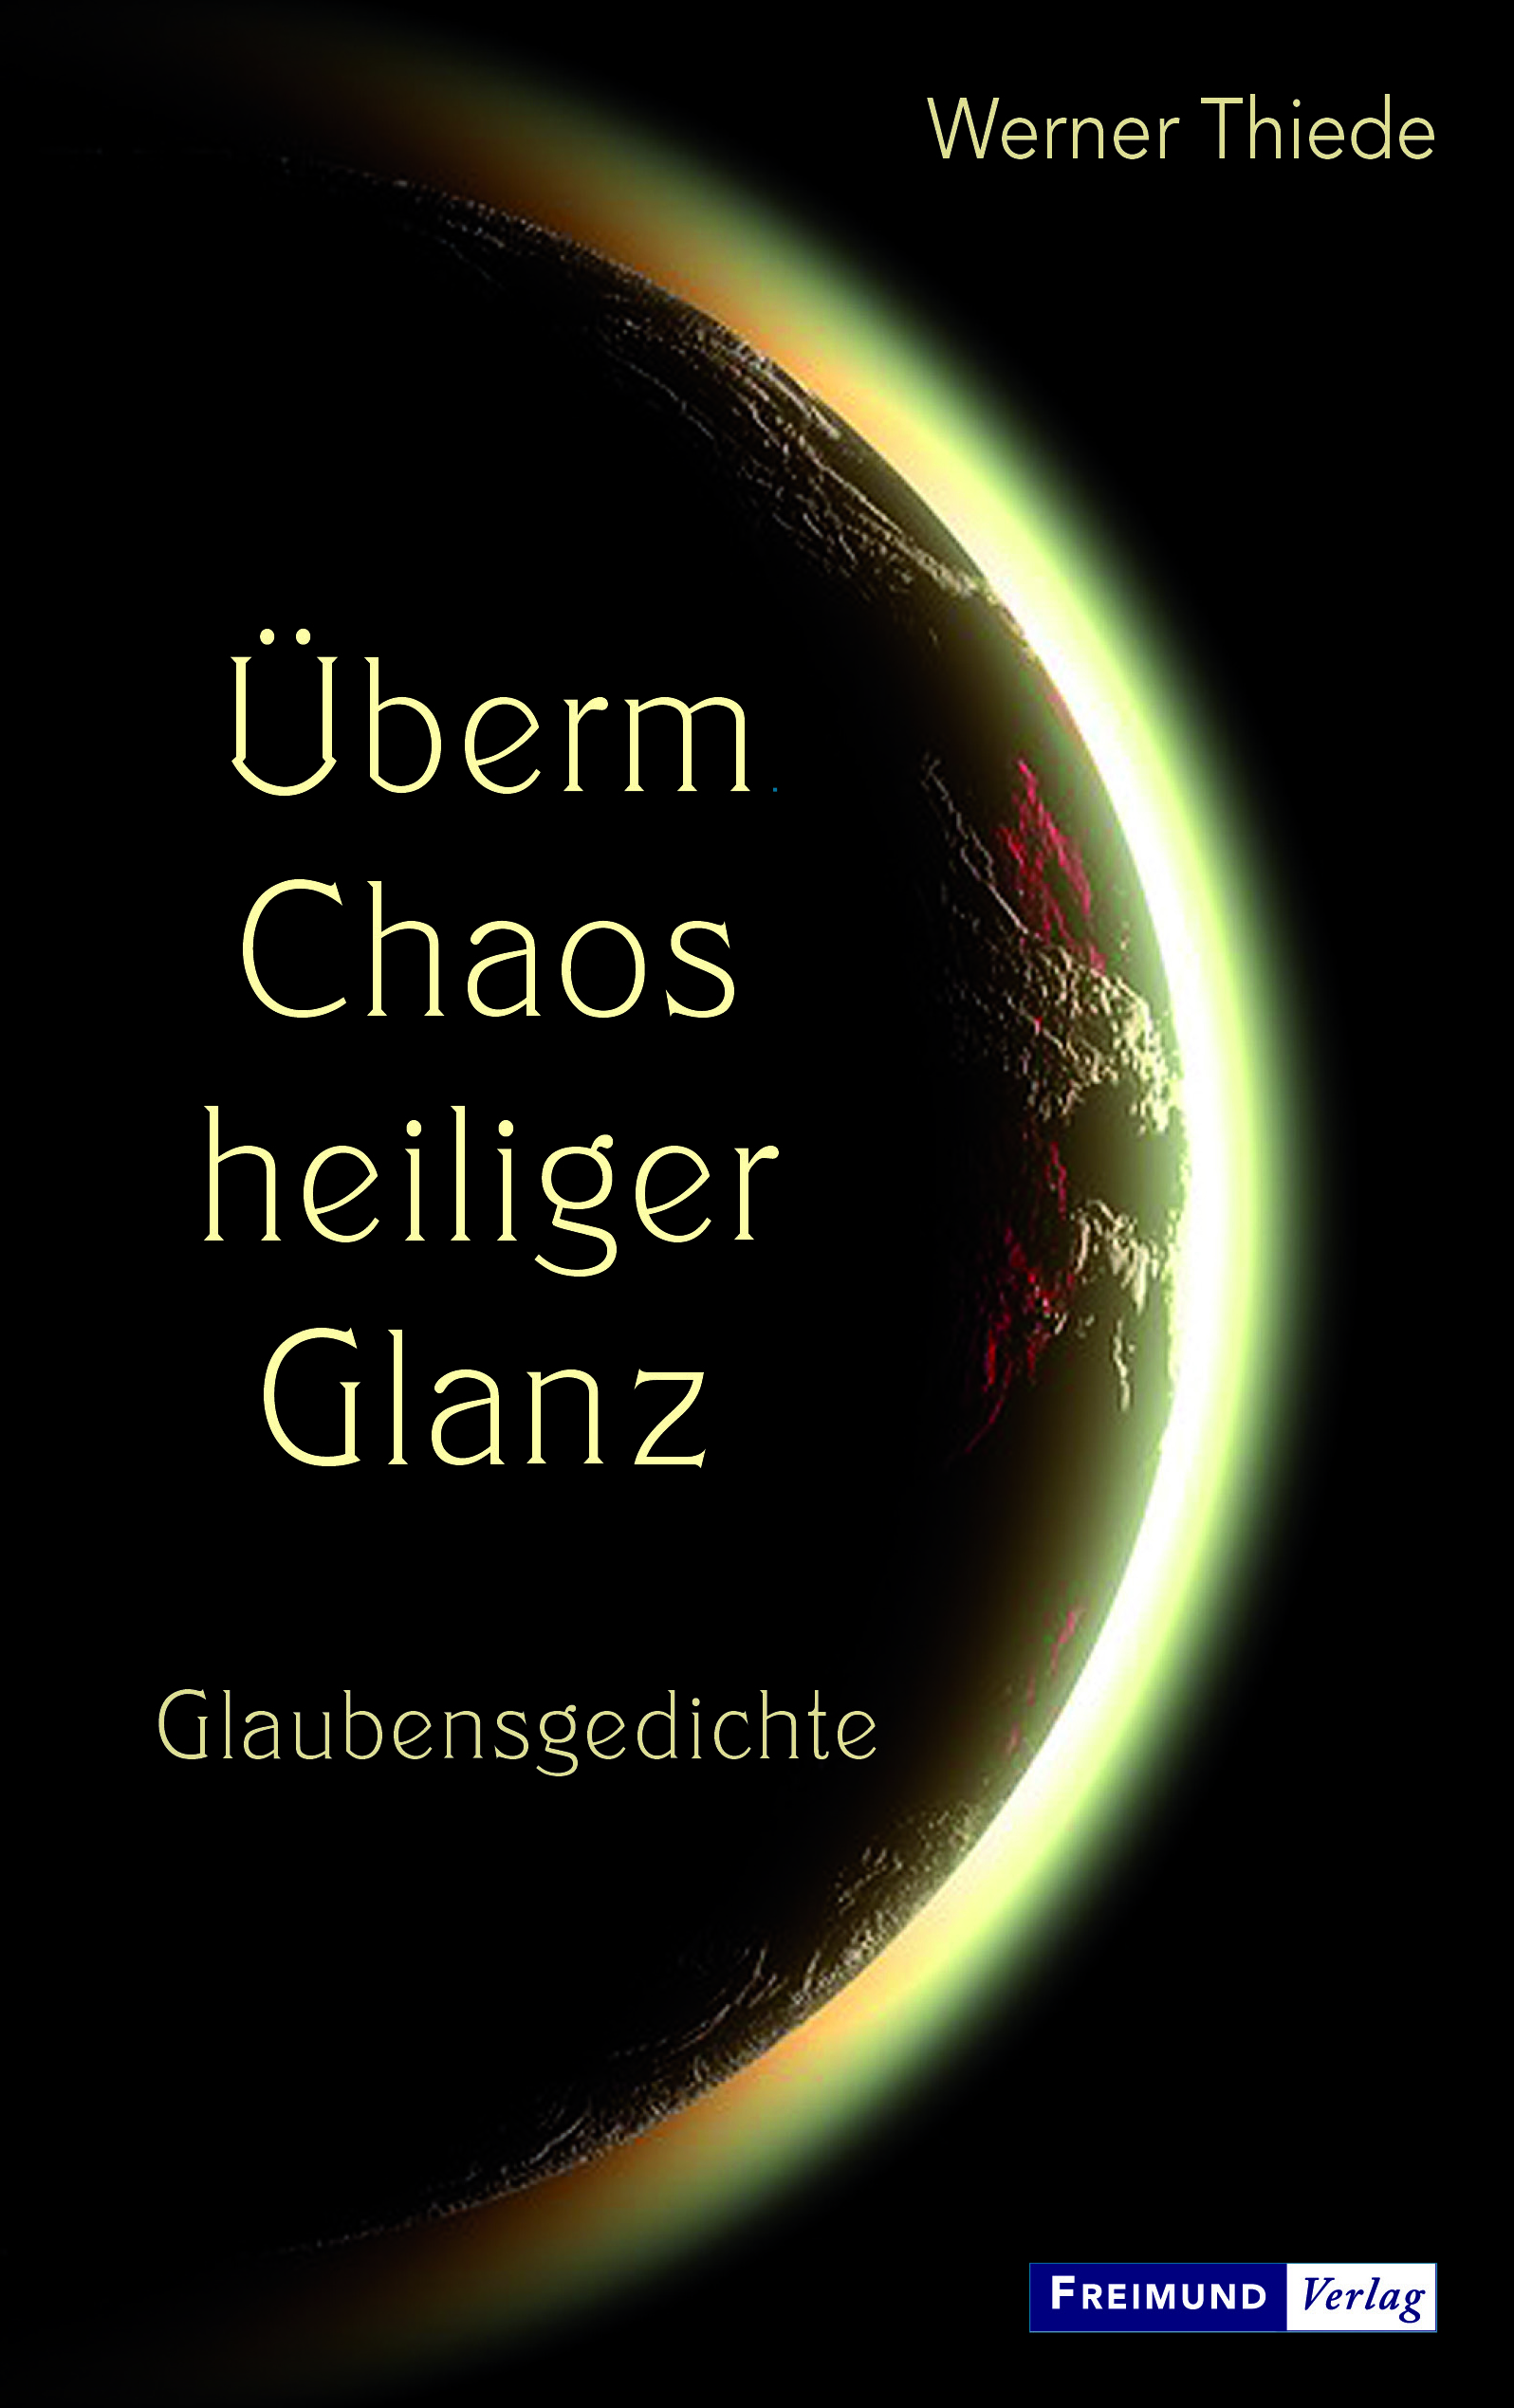 Werner Thiede: „Überm Chaos heiliger Glanz.“ Glaubensgedichte